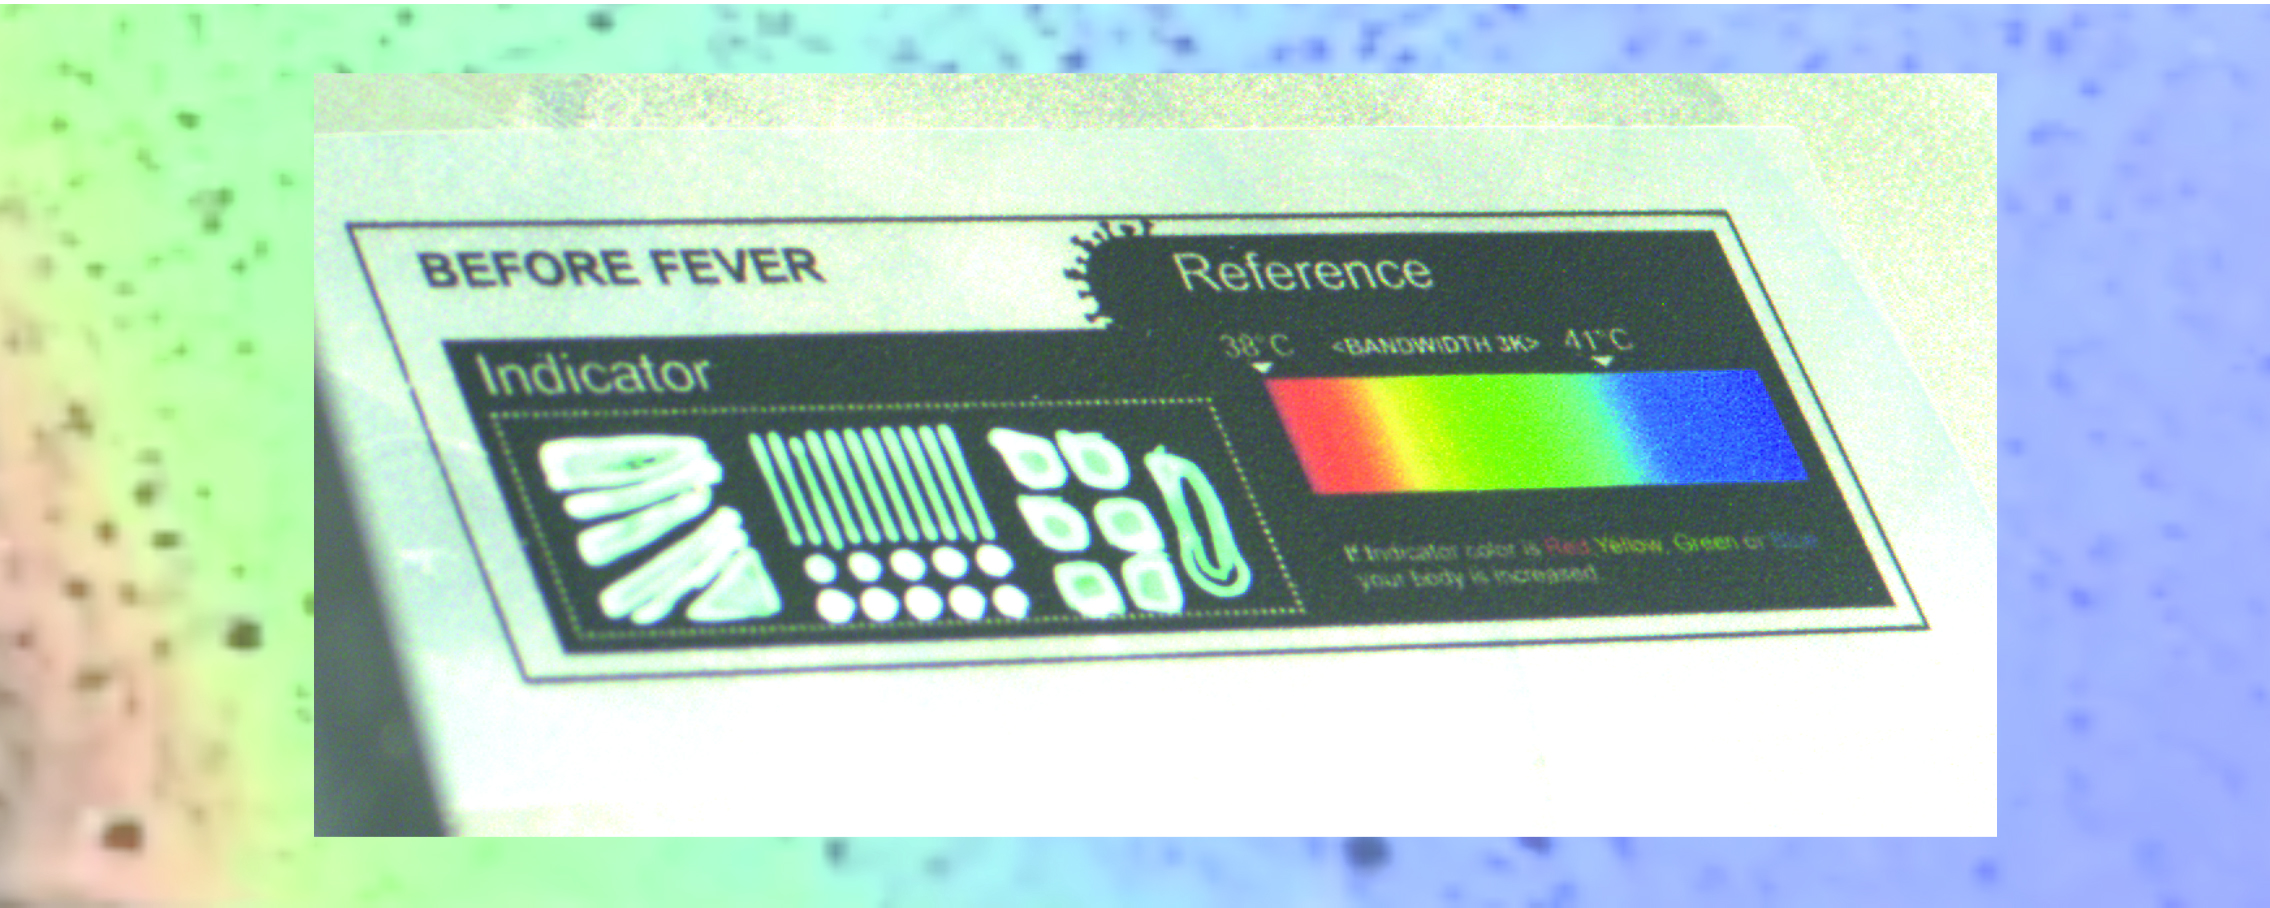 Technologiedemonstrator zur Temperaturindikation bei Fieberpatienten durch Drucken von thermochromen Tinten auf hautverträgliche Substrate.